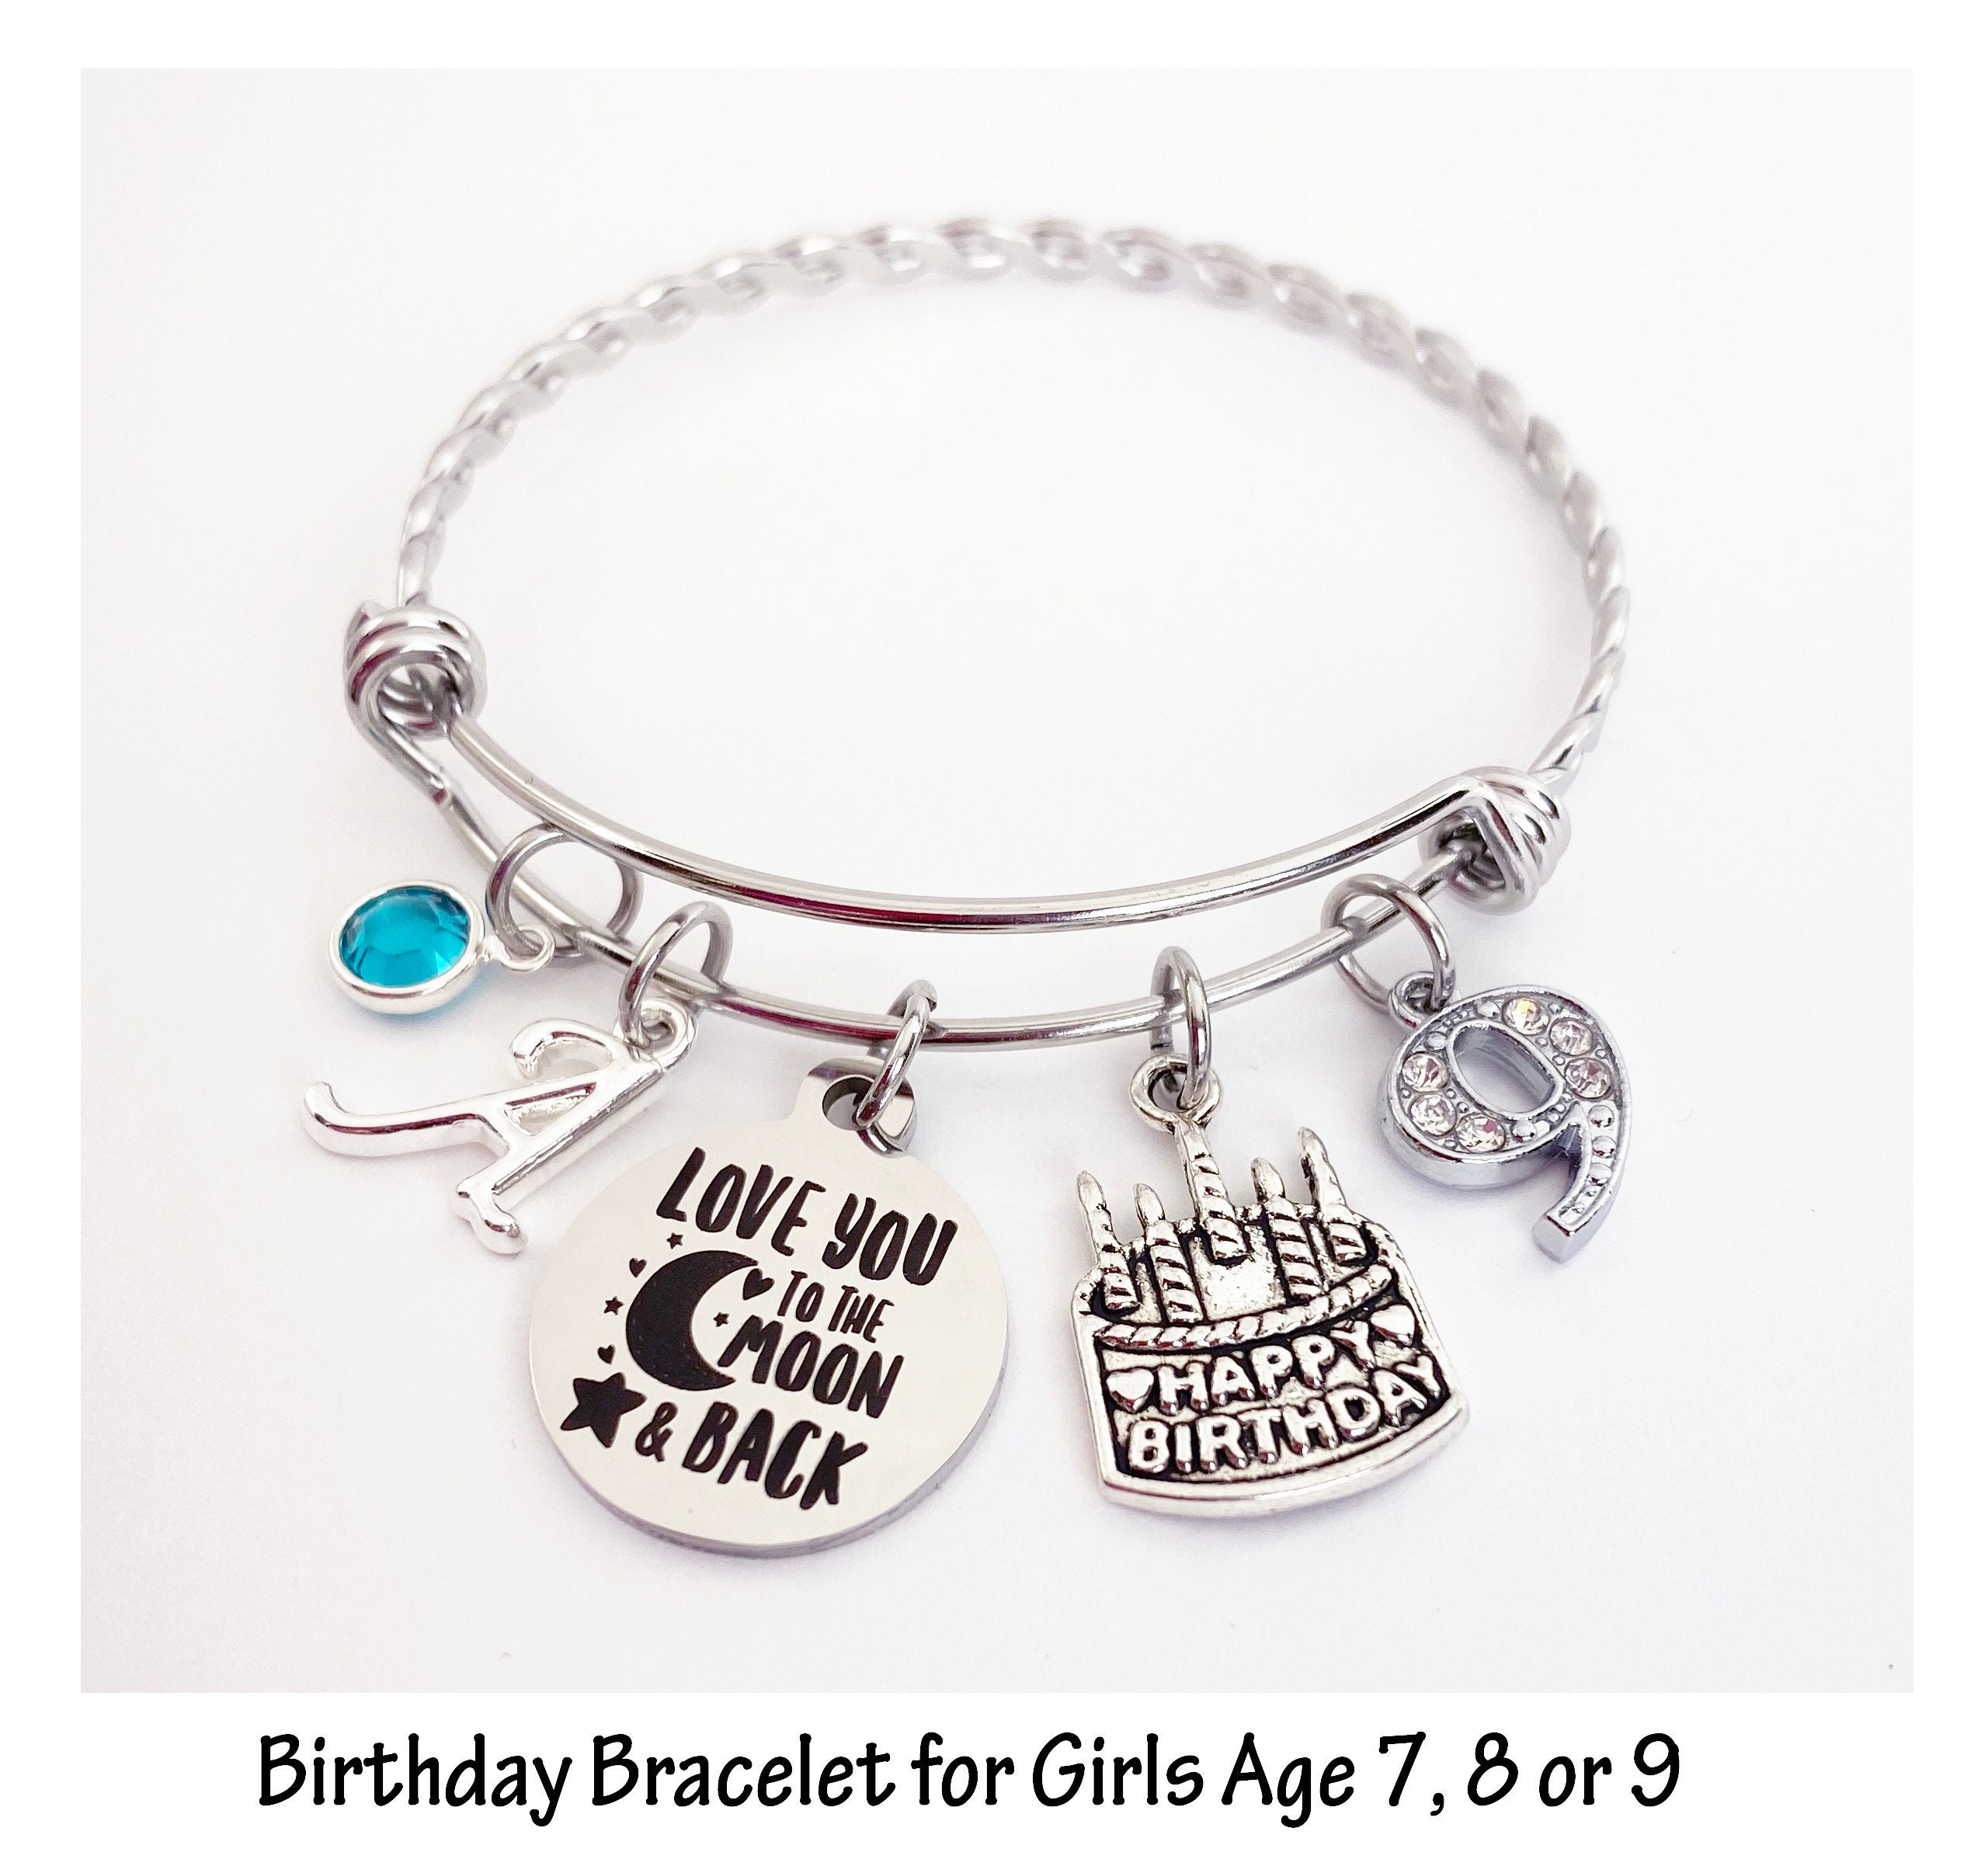 Iefshiny 5th Birthday Bracelet Gifts for Girls Little Girls Kids Toddler Granddaughter Girls Daughter Birthday Gifts Age 5 Happy 5th Birthday Kids